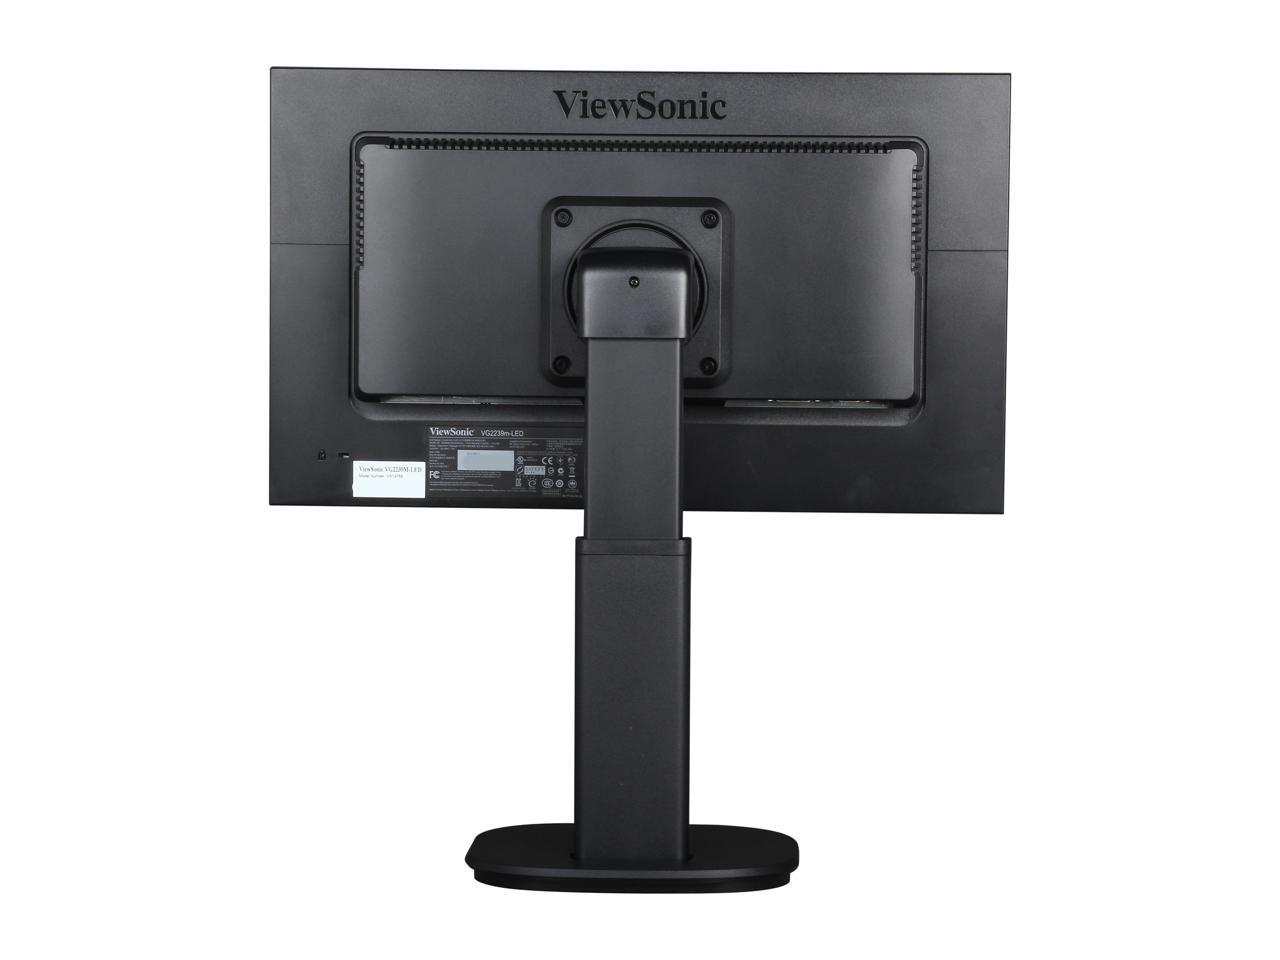 ViewSonic VG2239M-LED Black 22" 5ms Full HD 1080P TN Widescreen LED Backlit Monitor, 1000:1, 250cd/m2, USB&VGA&DVI-D Display Port, Built-in Internal Speaker, Height, Swivel, Tilt, Pivot adjustable